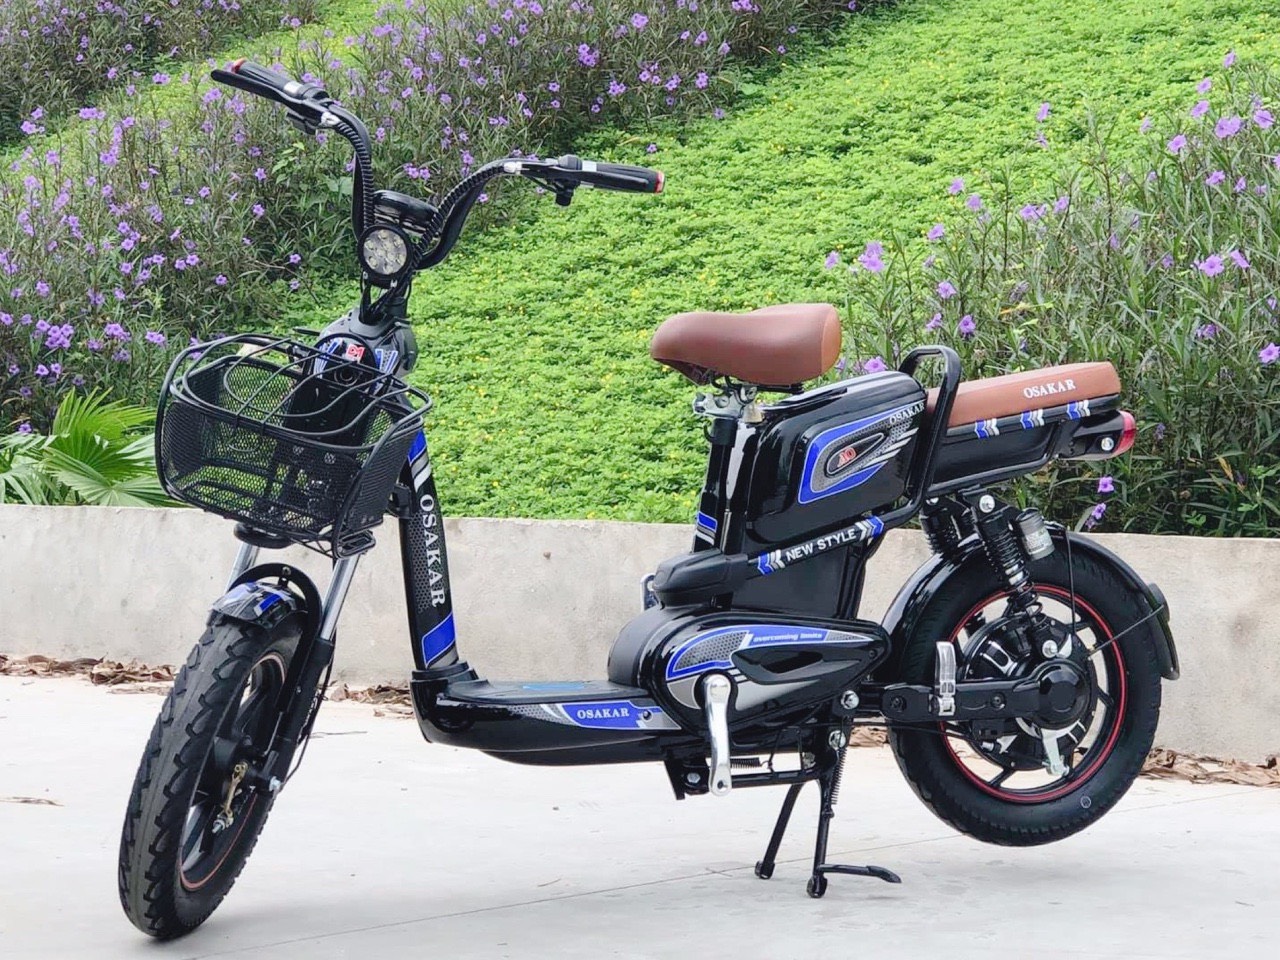 Xe đạp điện Osakar a10 mới nhất, chất lượng nhất 29423176 | Rongbay.com